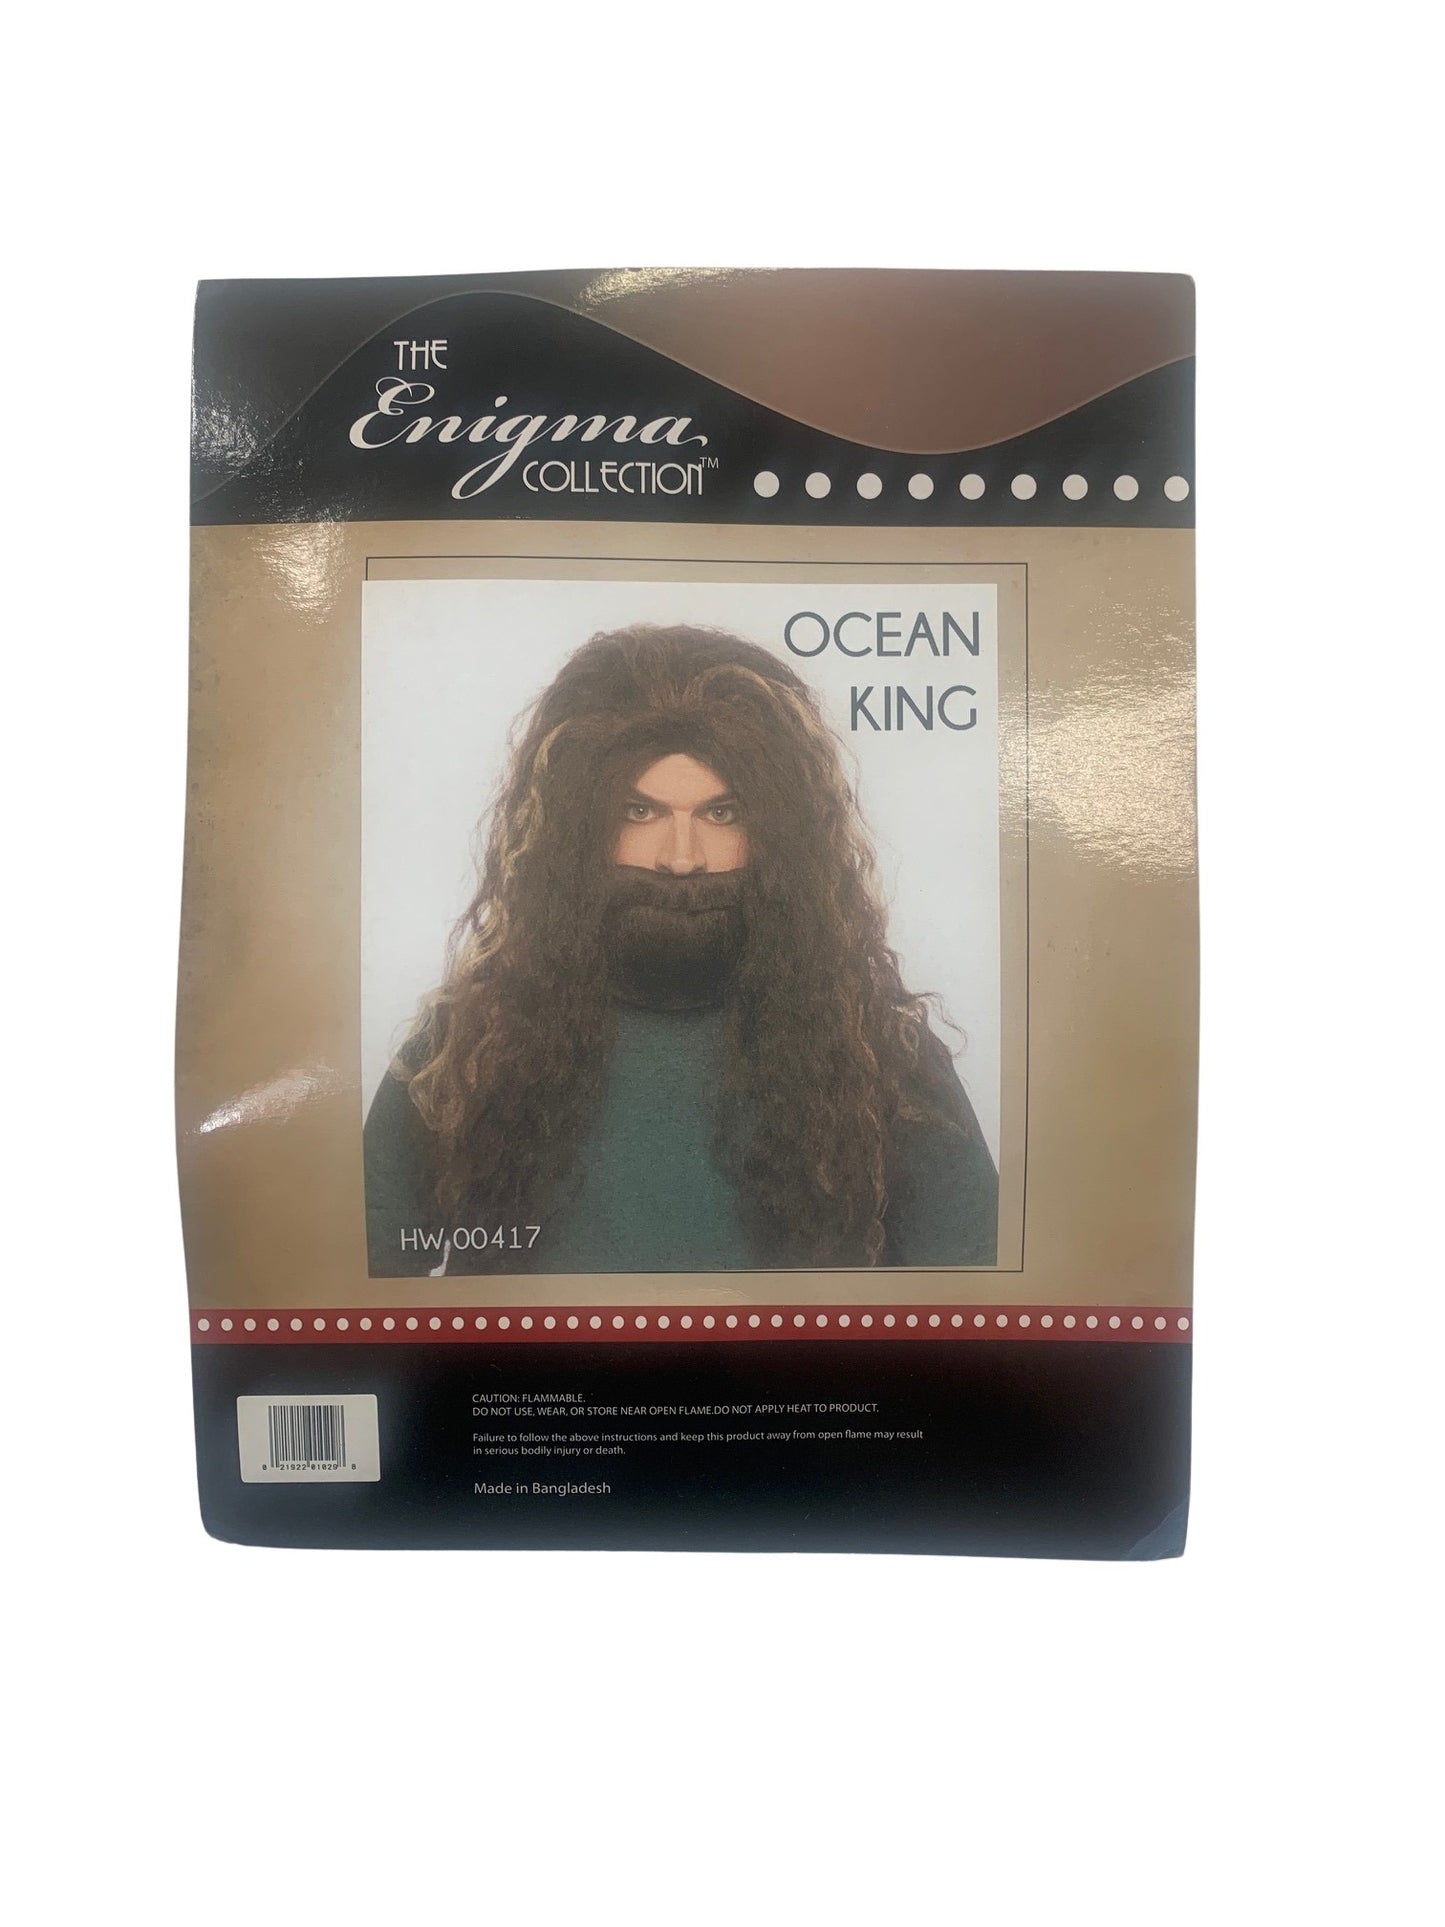 Ocean King wig